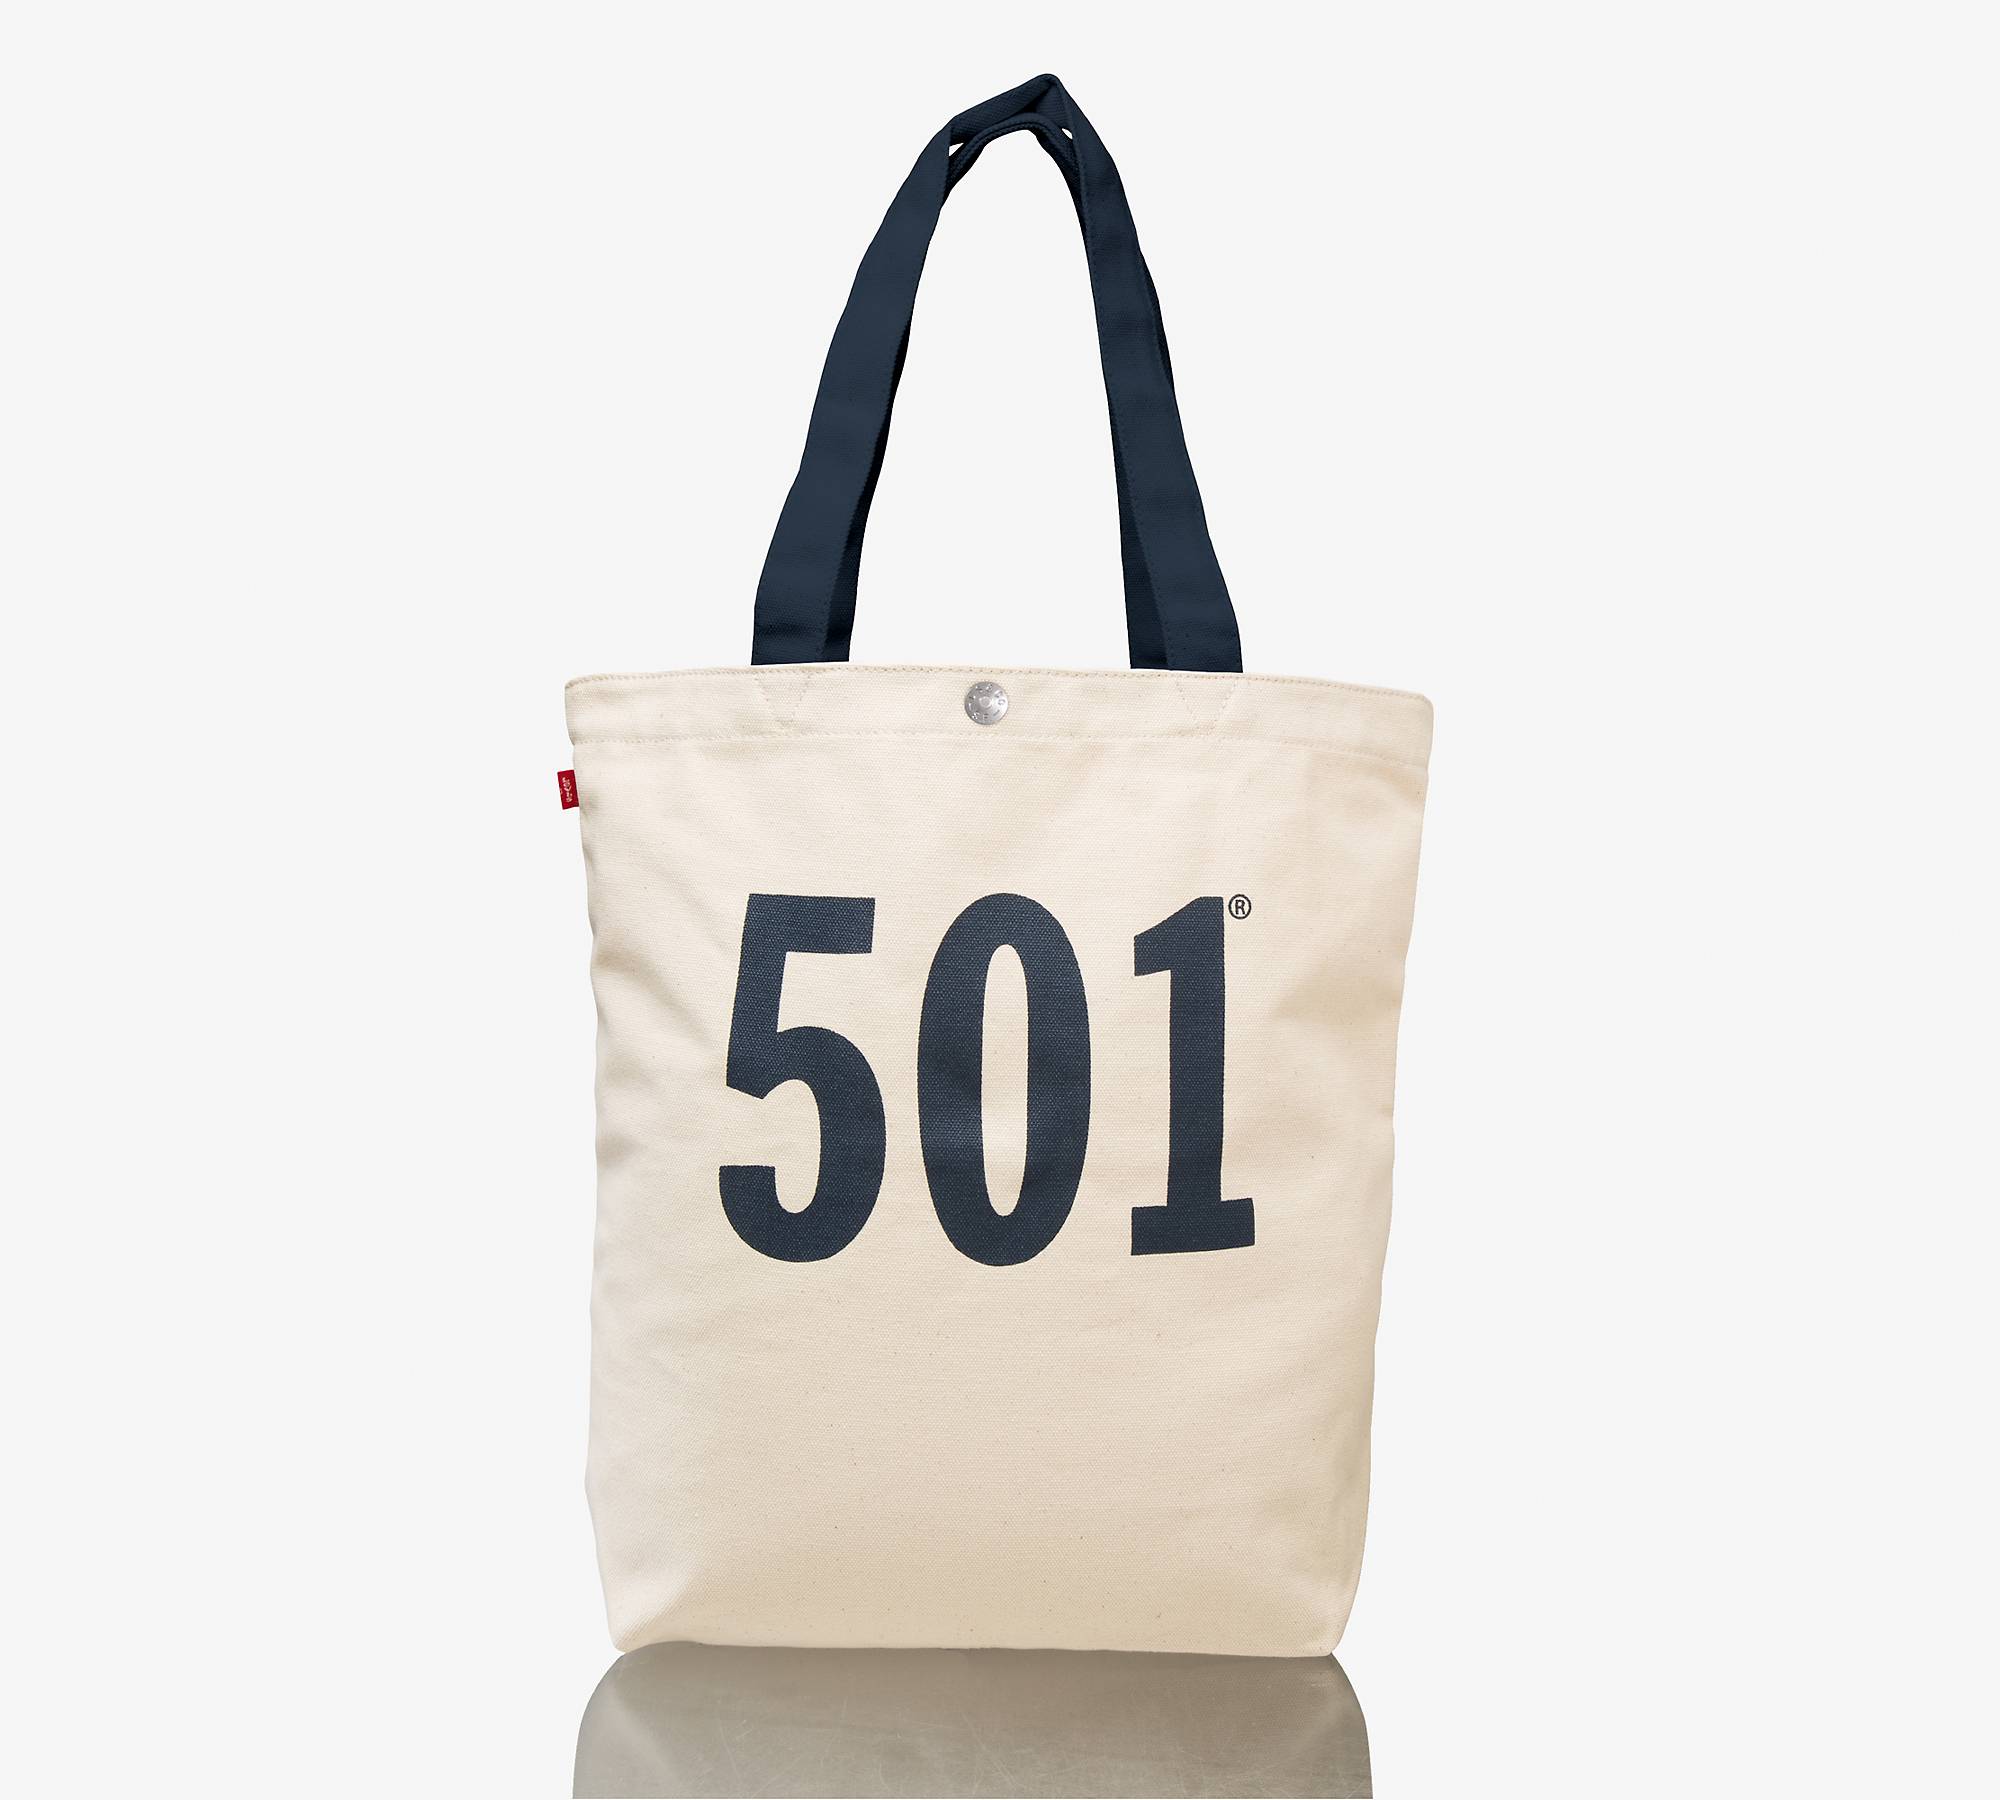 501® Tote Bag 1